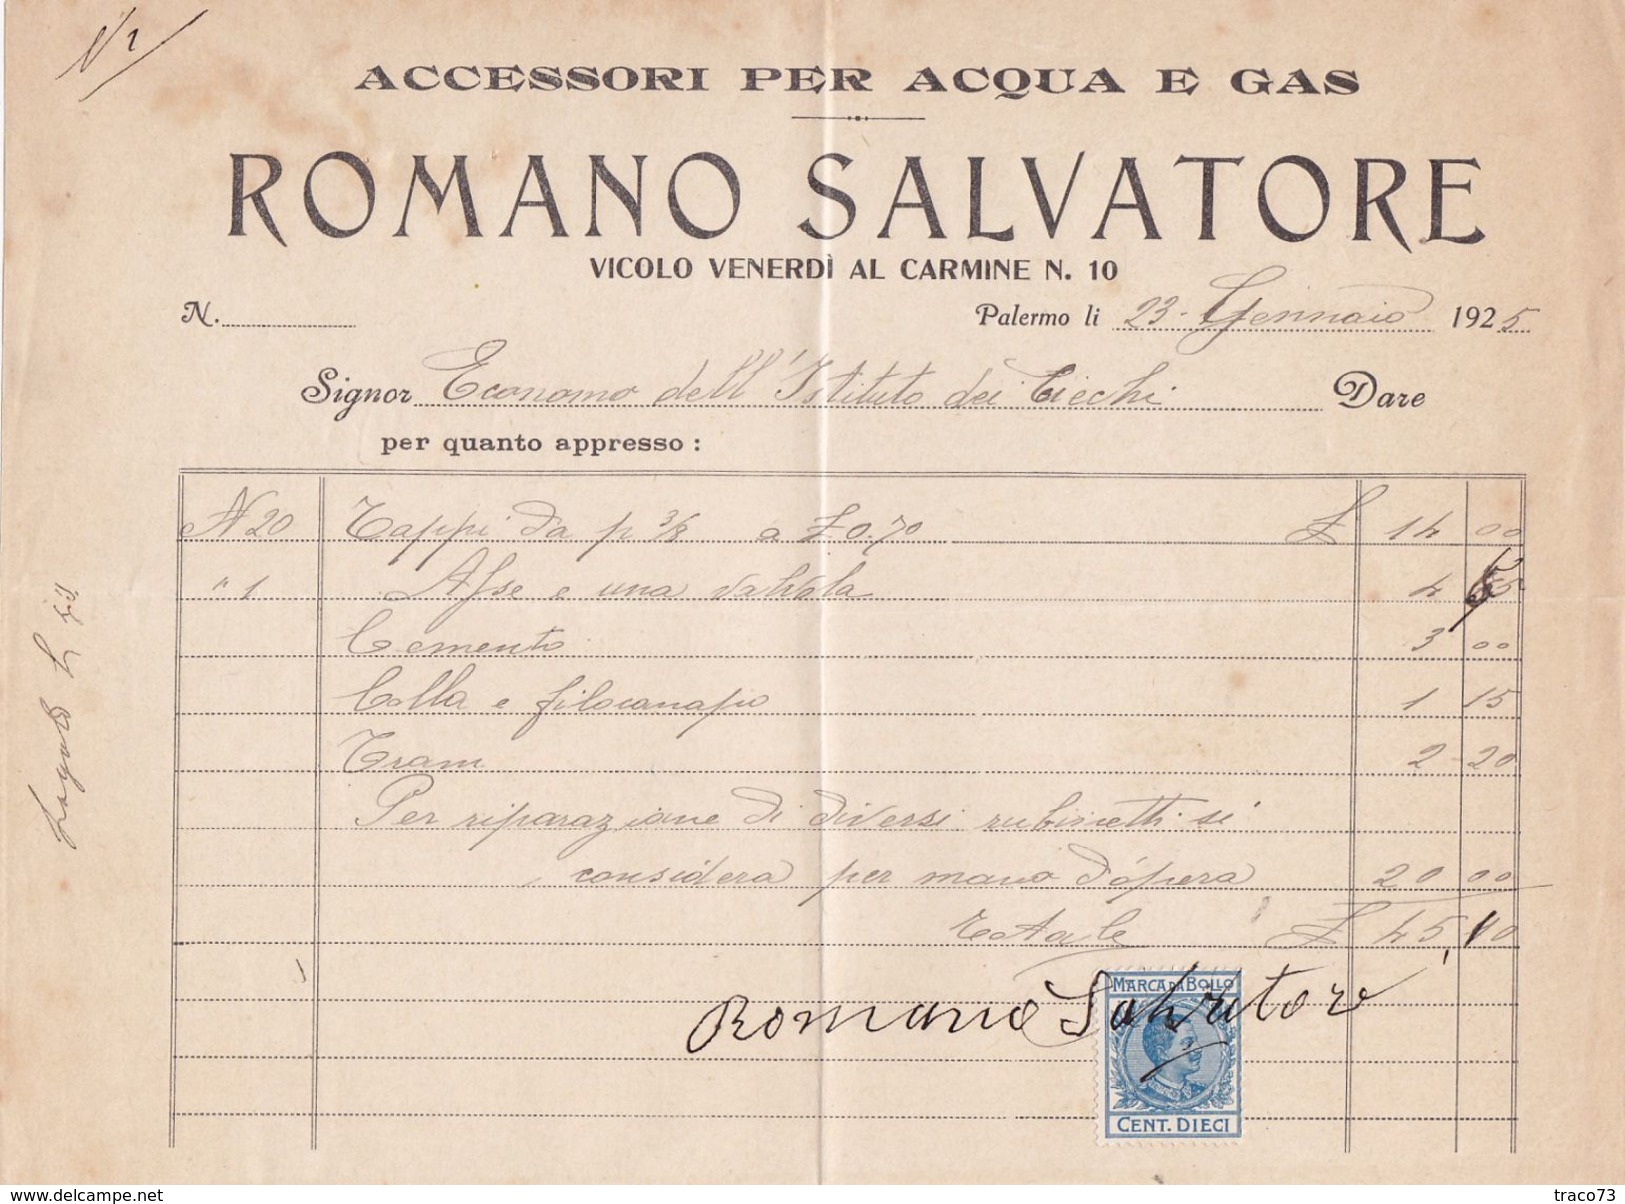 PALERMO  _ 1925  /  Accessori Per Acqua E Gas  ROMANO SALVATORE - Documento Commerciale _ Marche Da Bollo - Italie